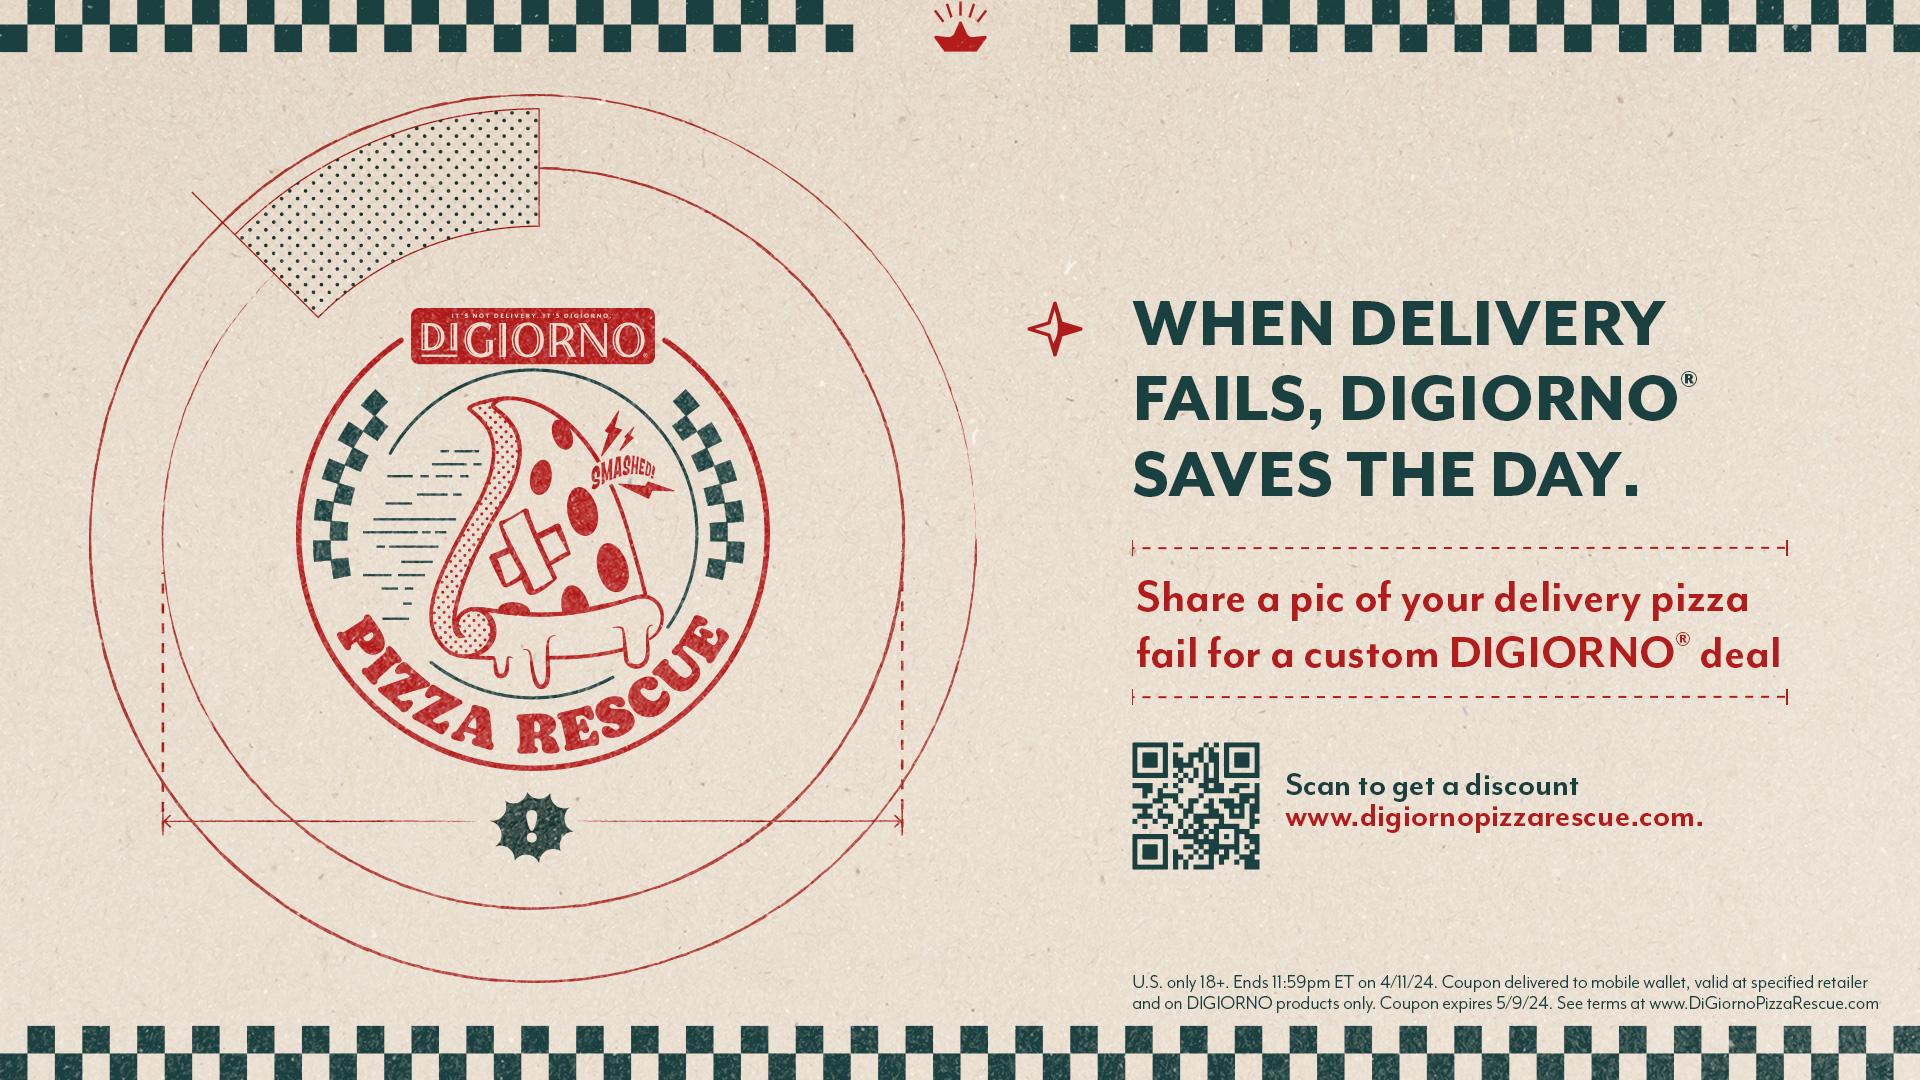 DiGiorno's Pizza Rescue promocija za Dan broja Pi